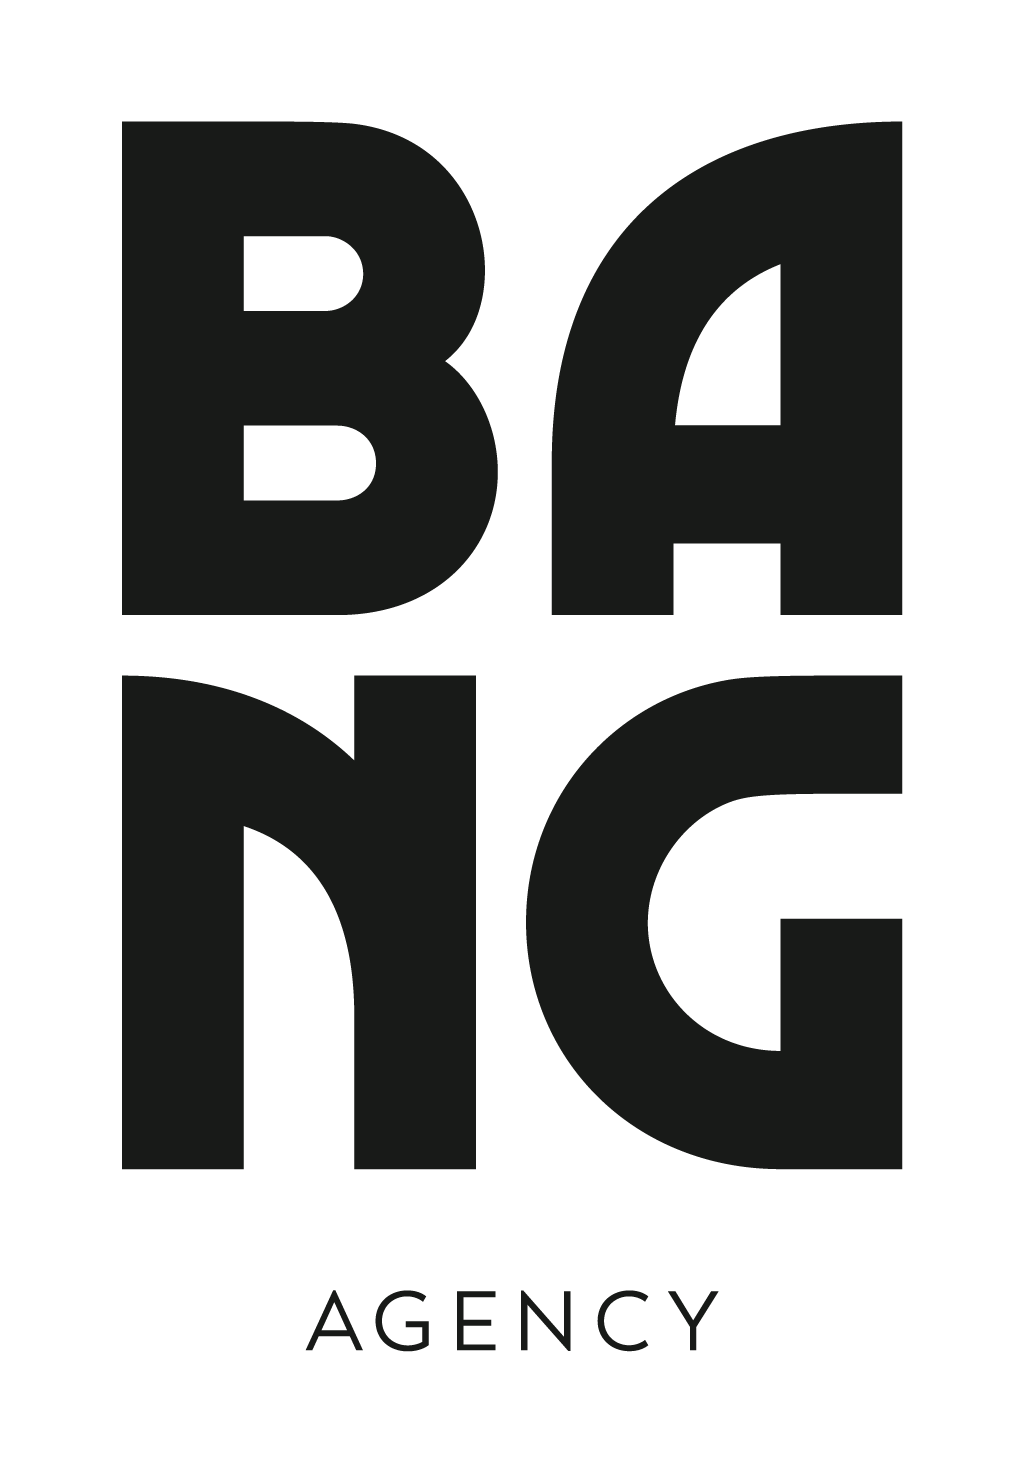 BANG_Agency_Logo_SoftBlack.png